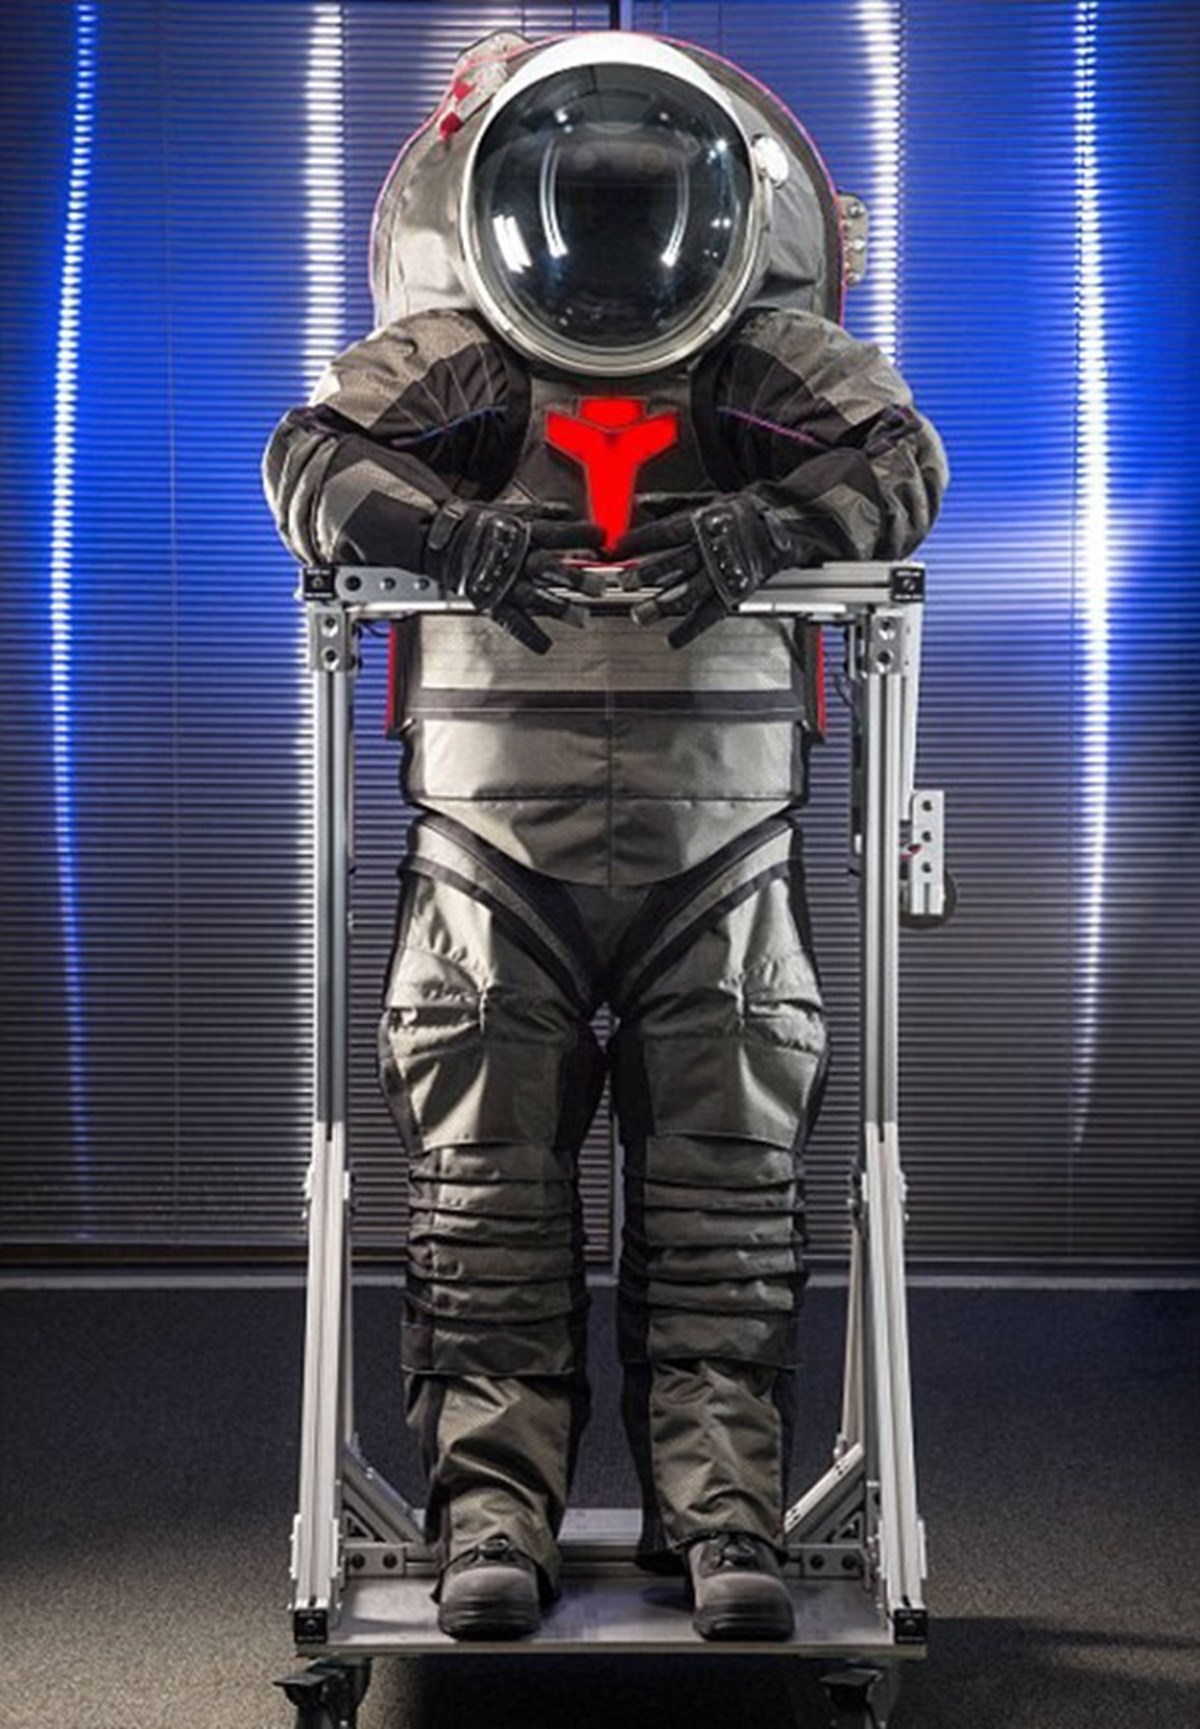 Astronot kıyafetinin bir başka artısı ise 3D yazıcılar vasıtası ile üretilecek olması. Bu sayede ihtiyaç duyulması halinde yeni giysiler Mars